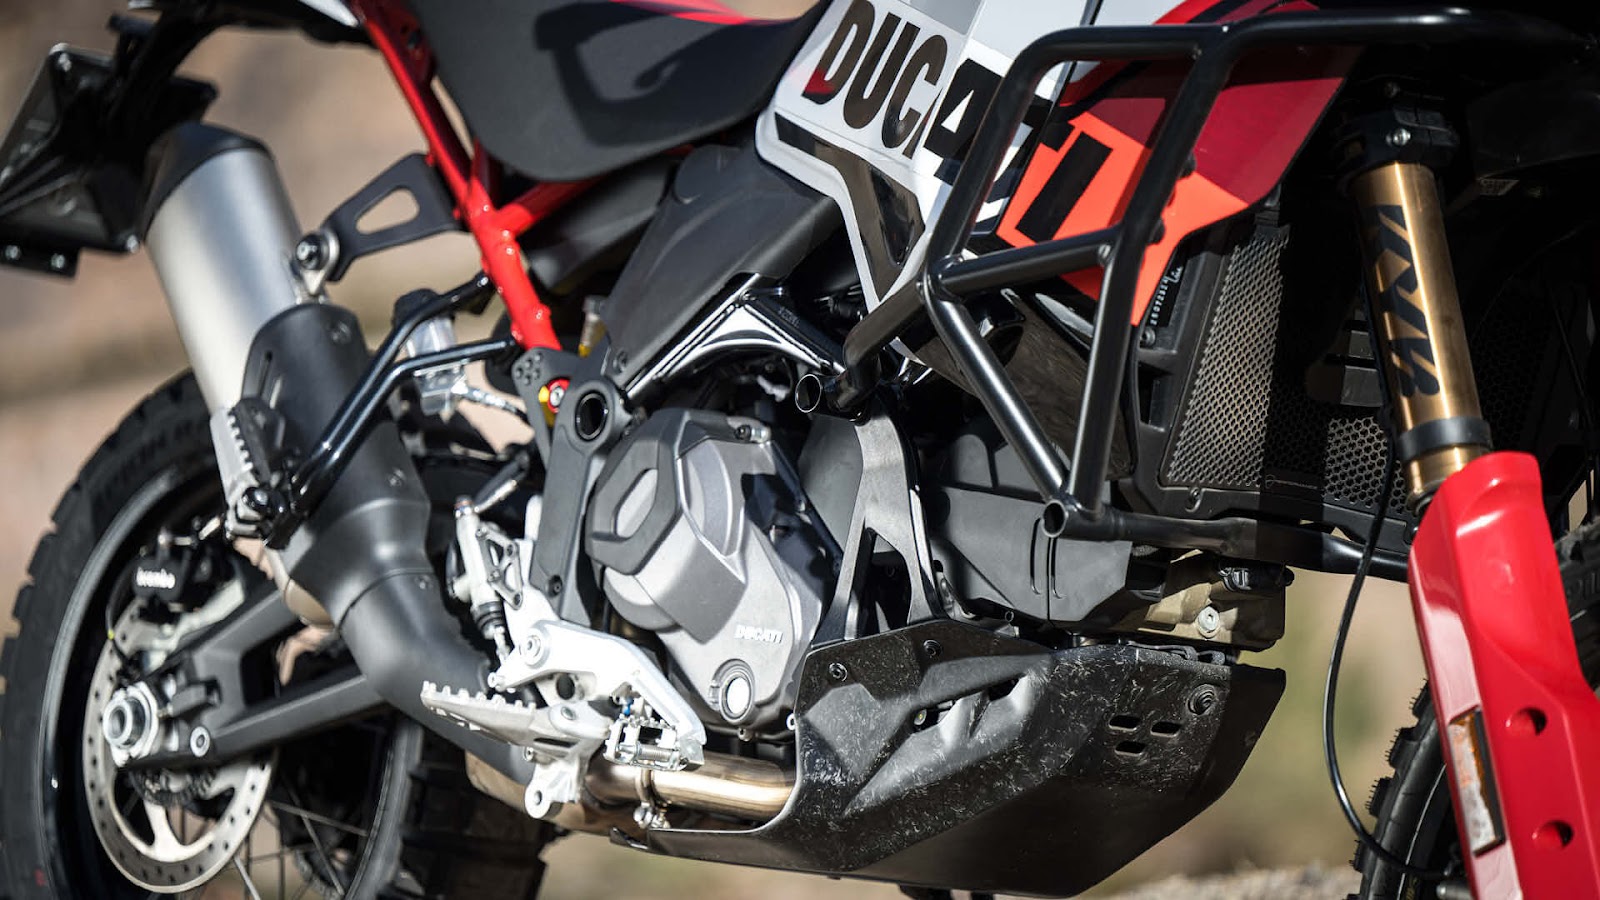 Motorschutz aus Carbon, oder wir sprechen nicht von einer Ducati.